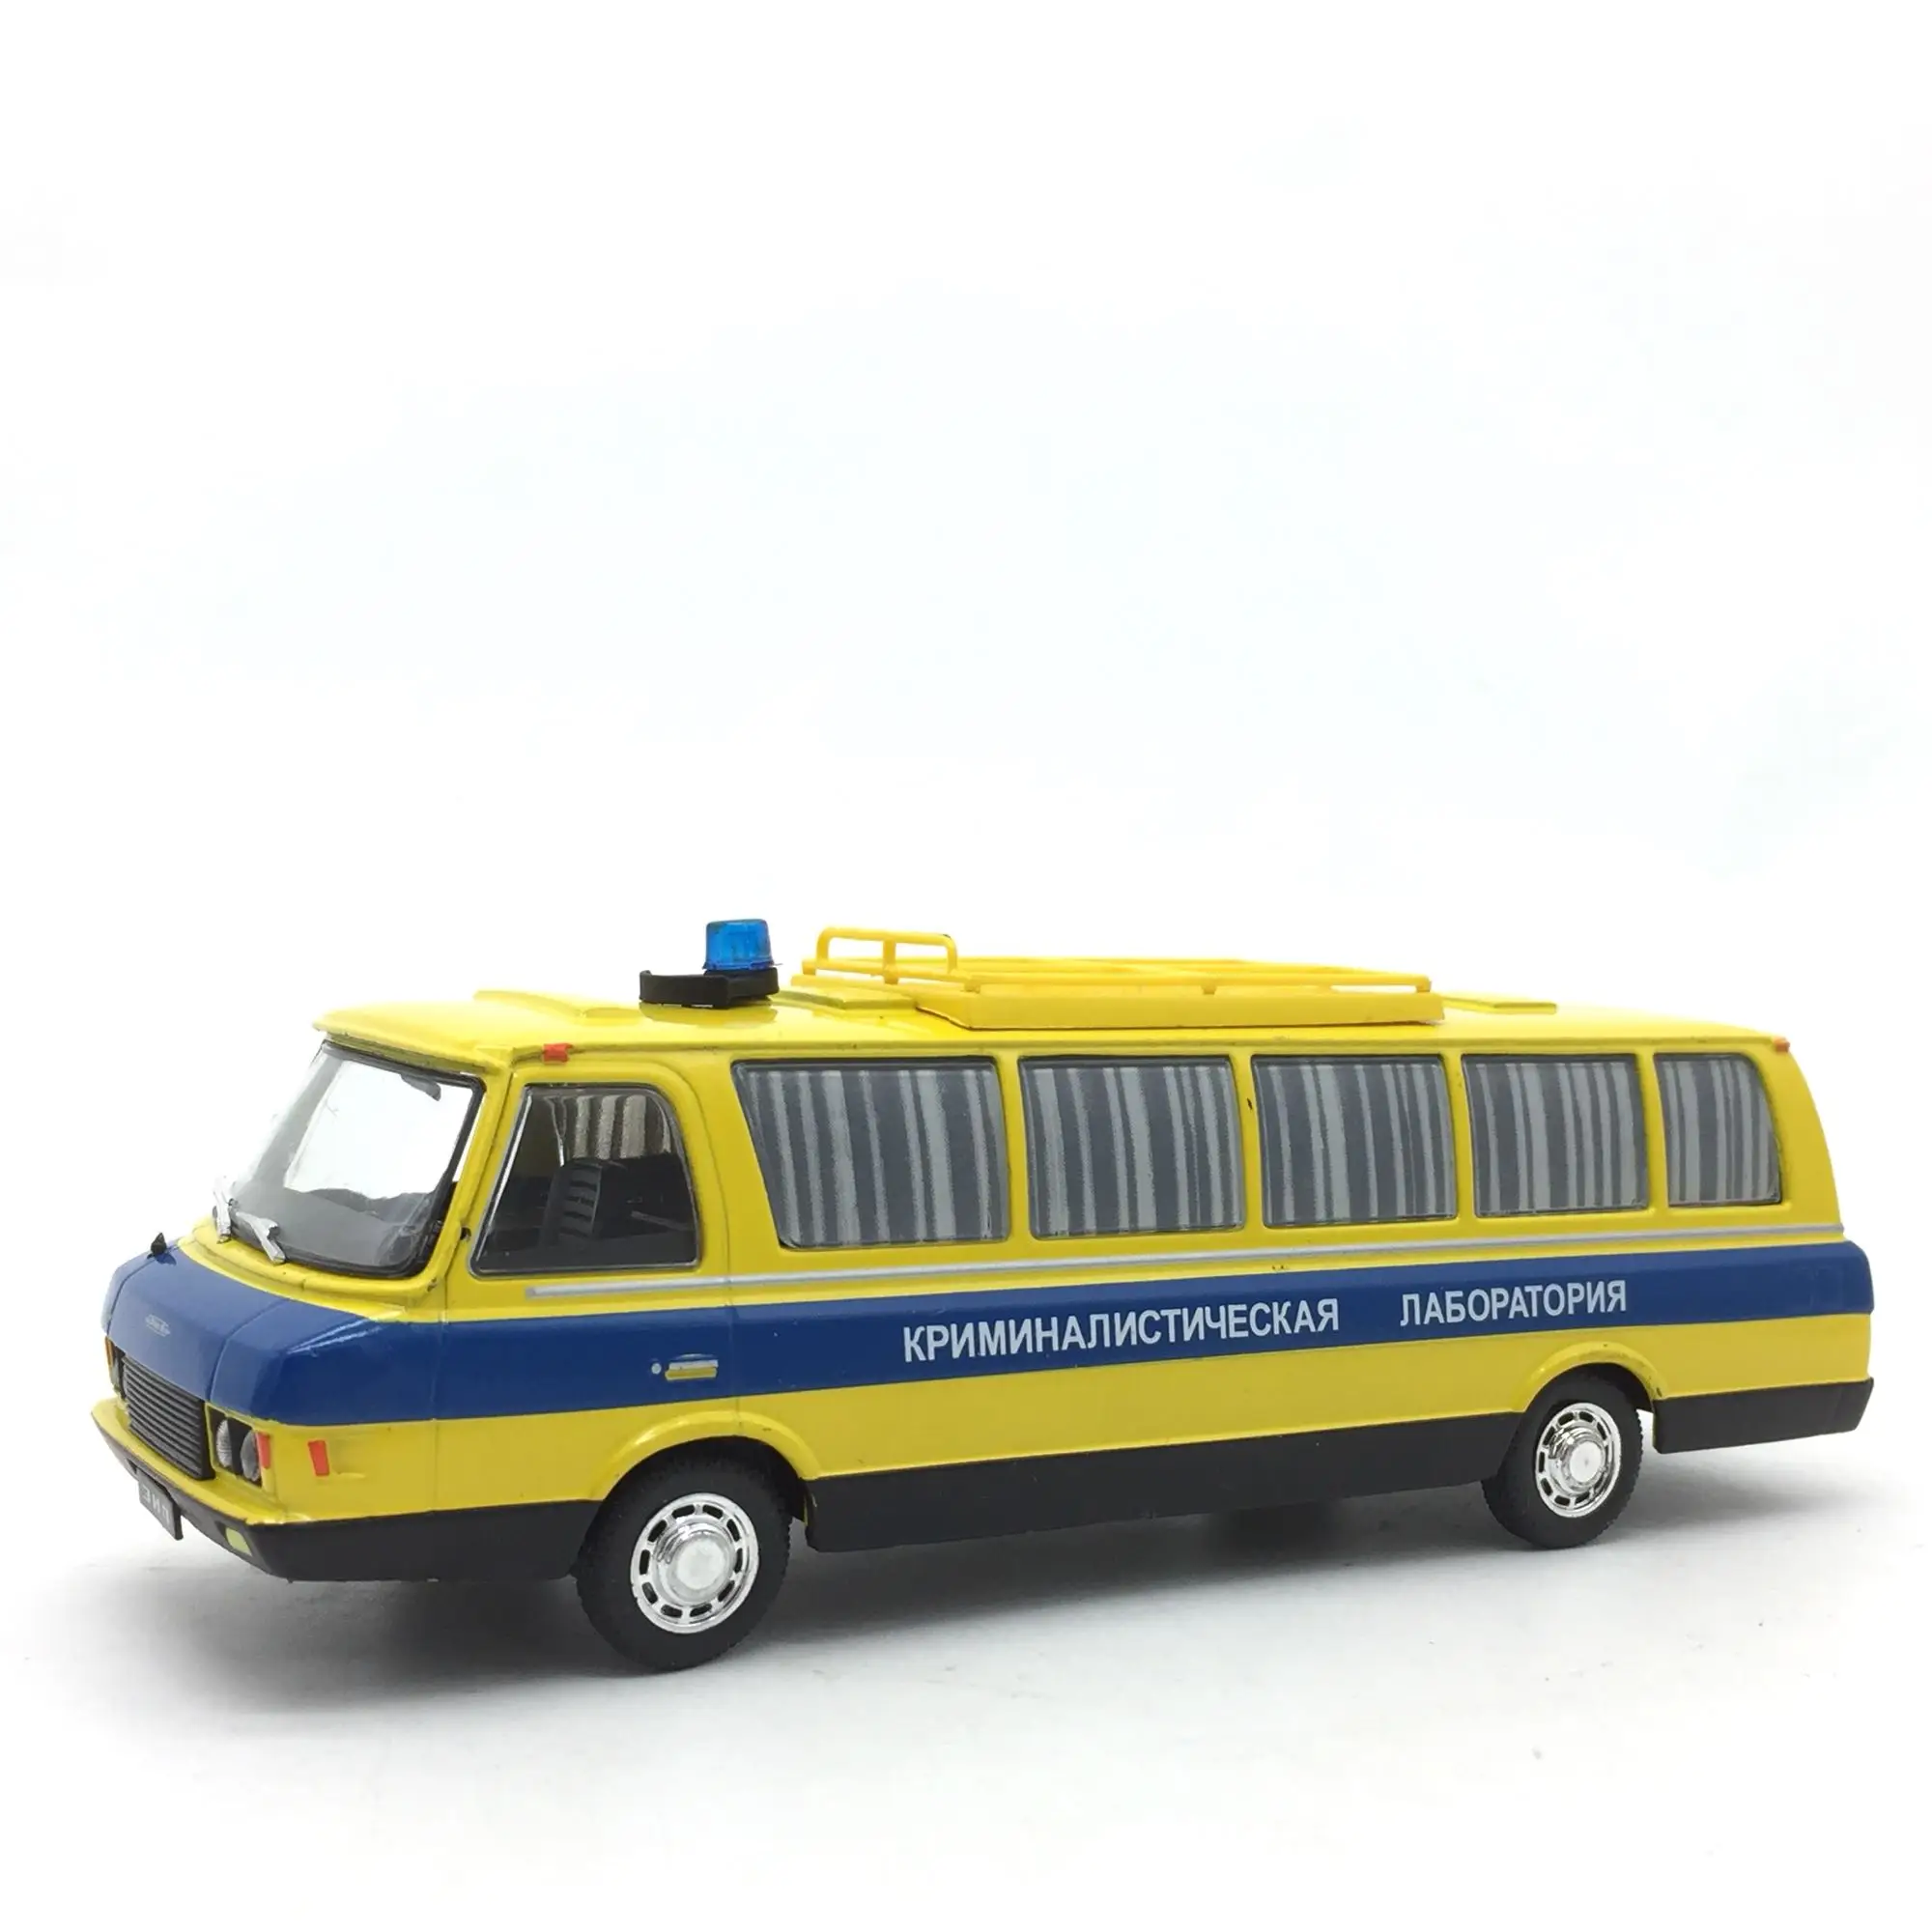 1:43 Восточно-Европейский совет литой автобус литой автомобиль Длина модели 16 см